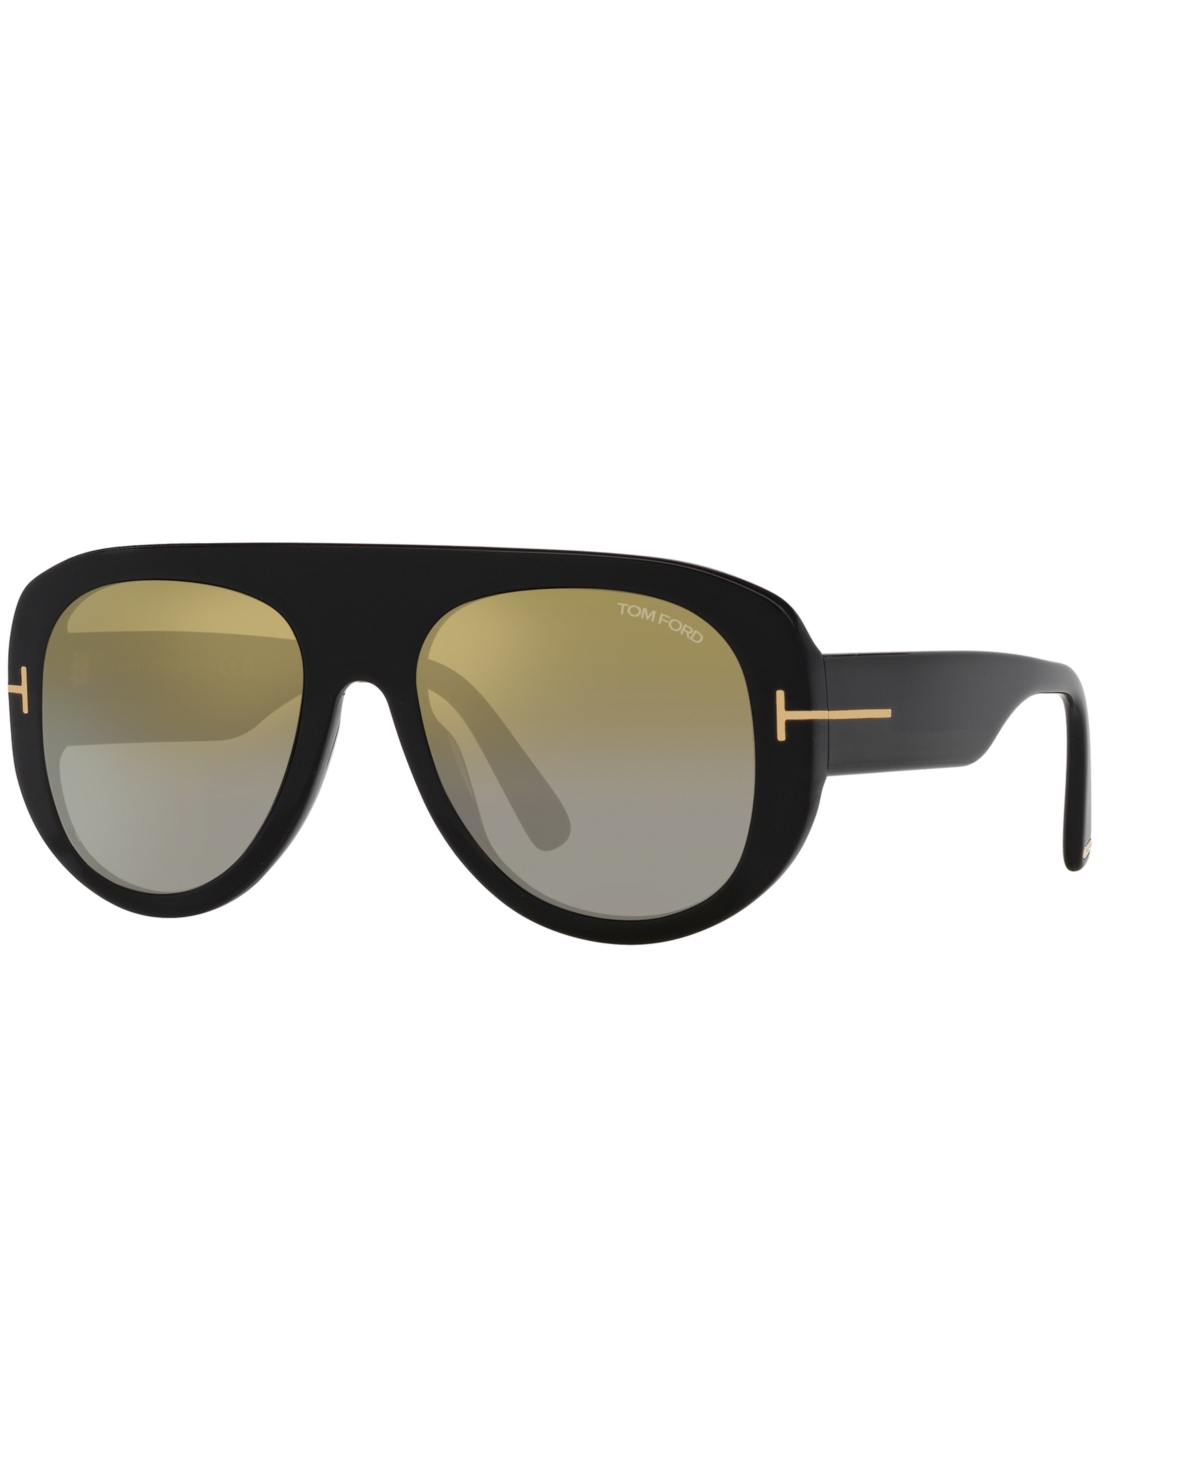 Men's Sunglasses, Cecil - Black Shiny